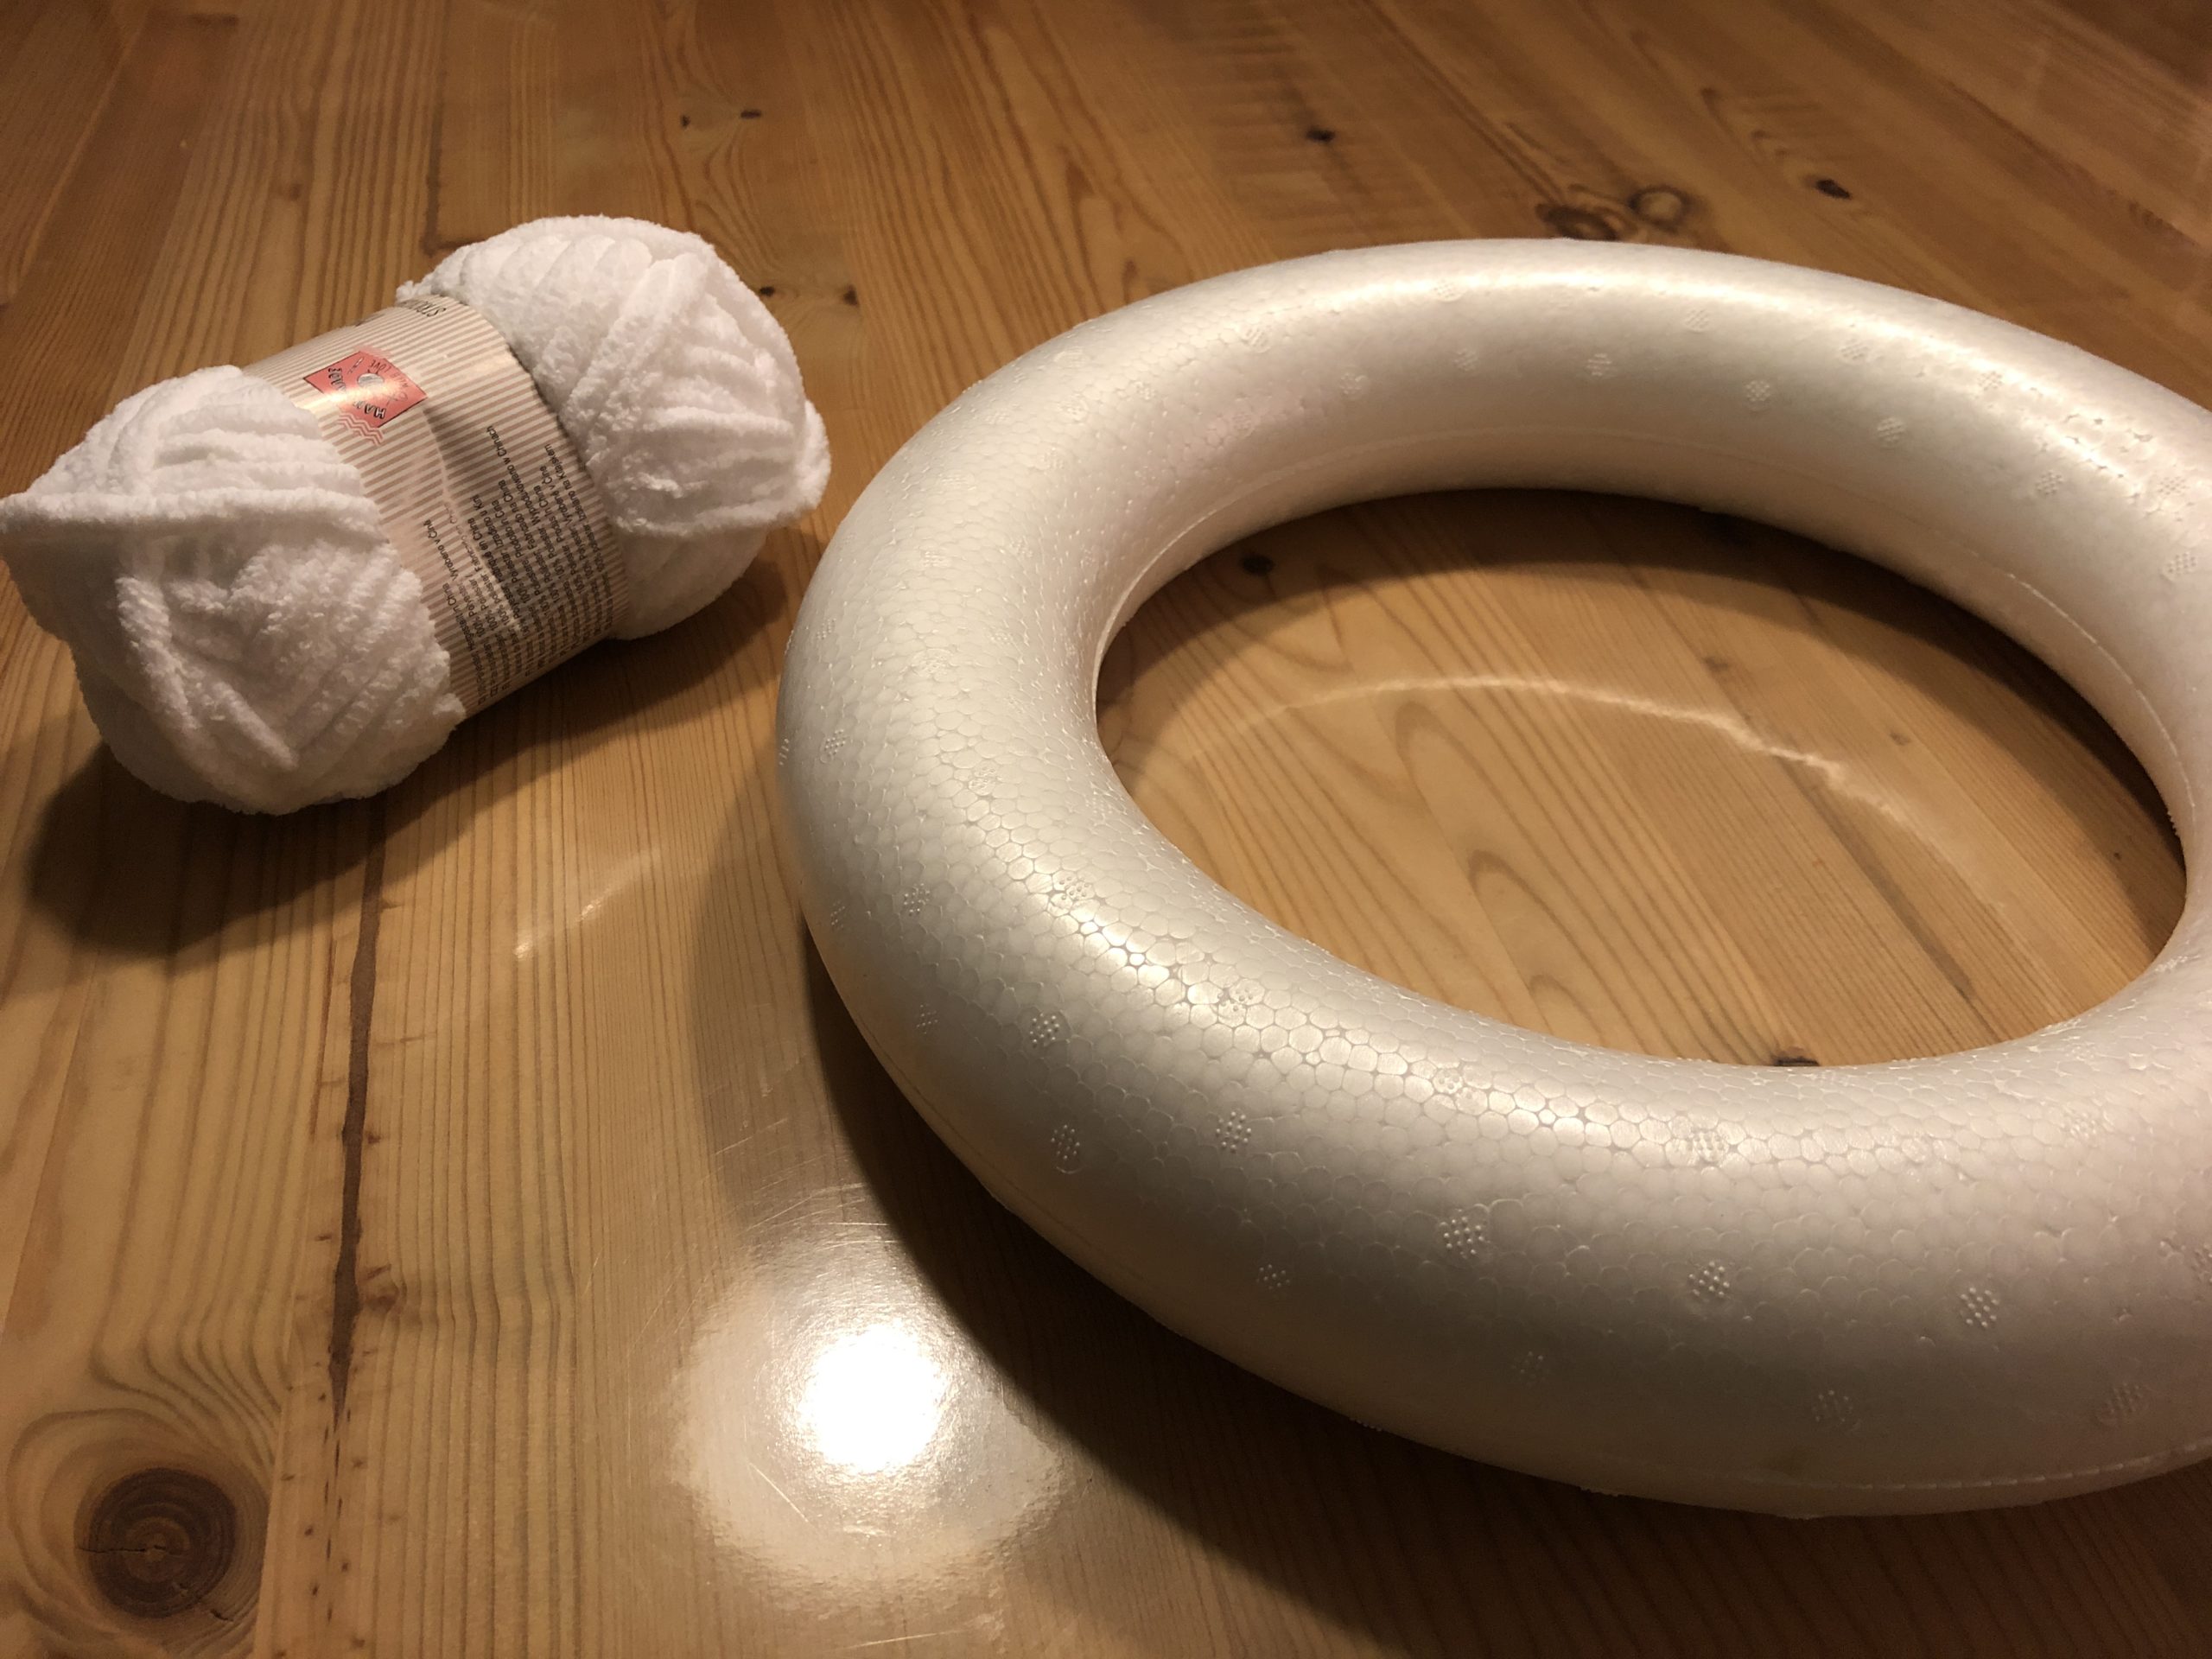 Bild zum Schritt 1 für das Bastel- und DIY-Abenteuer für Kinder: 'Zuerst braucht ihr einen Styropor-Ring und flauschige Wolle. Die Farbe...'